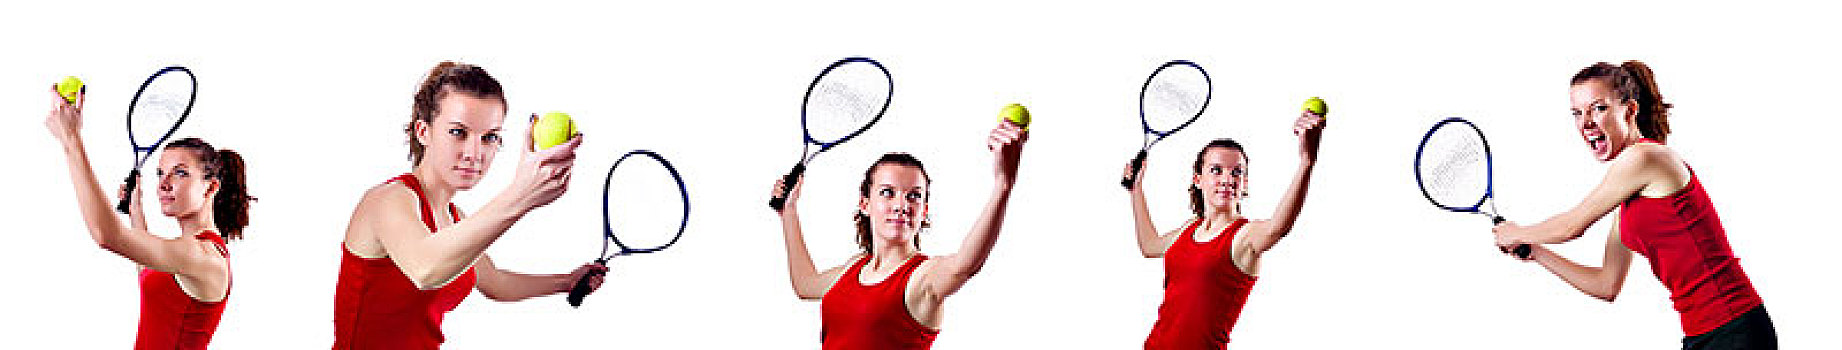 女人,网球手,隔绝,白色背景